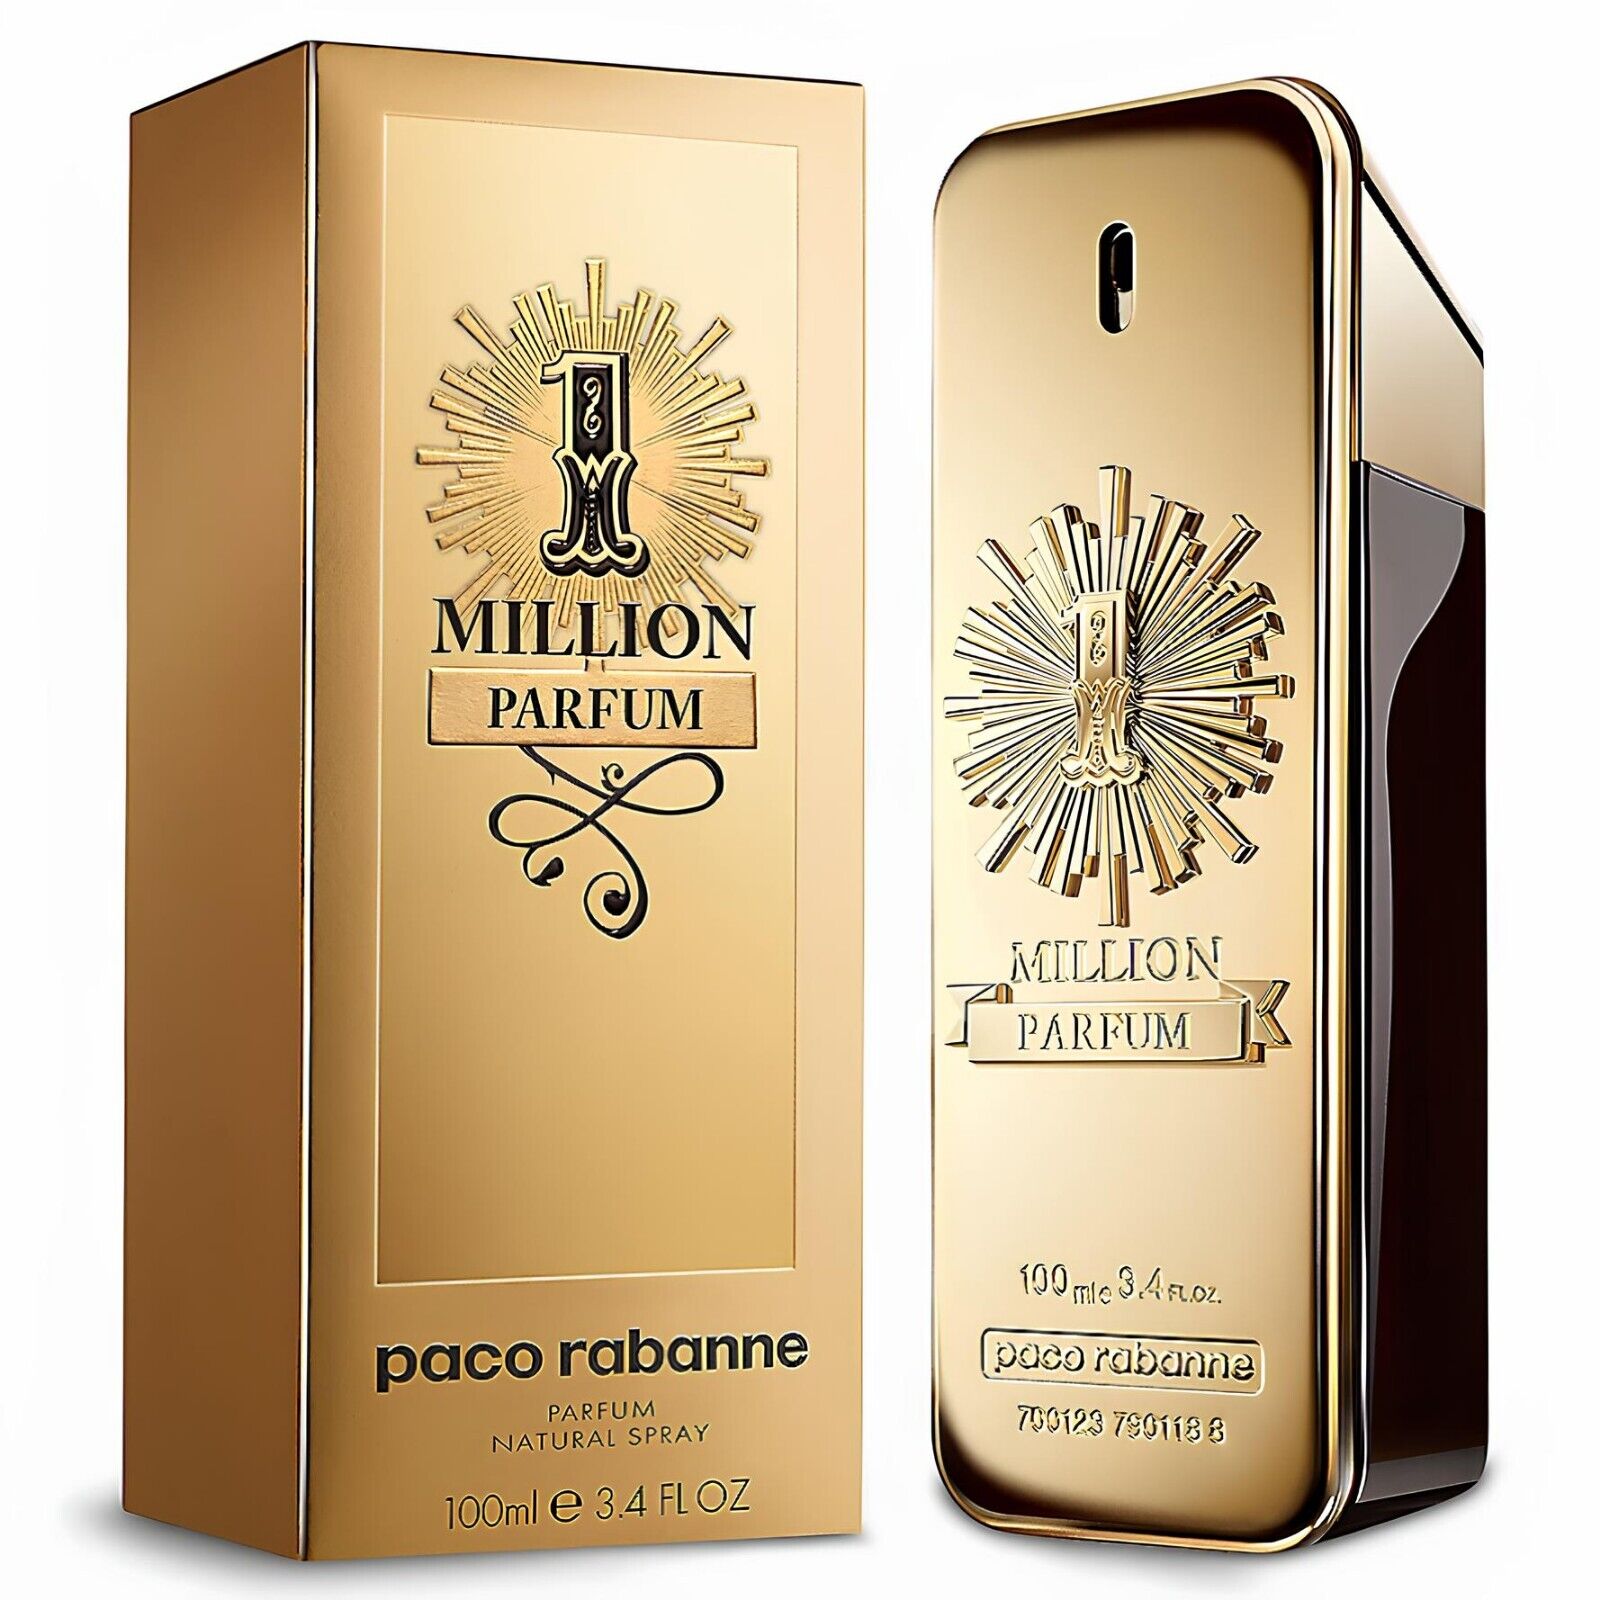 Páco Rábánne 1 Million Parfum Men’s Eau De Parfum Cologne Spray 3.4 oz/100 ml